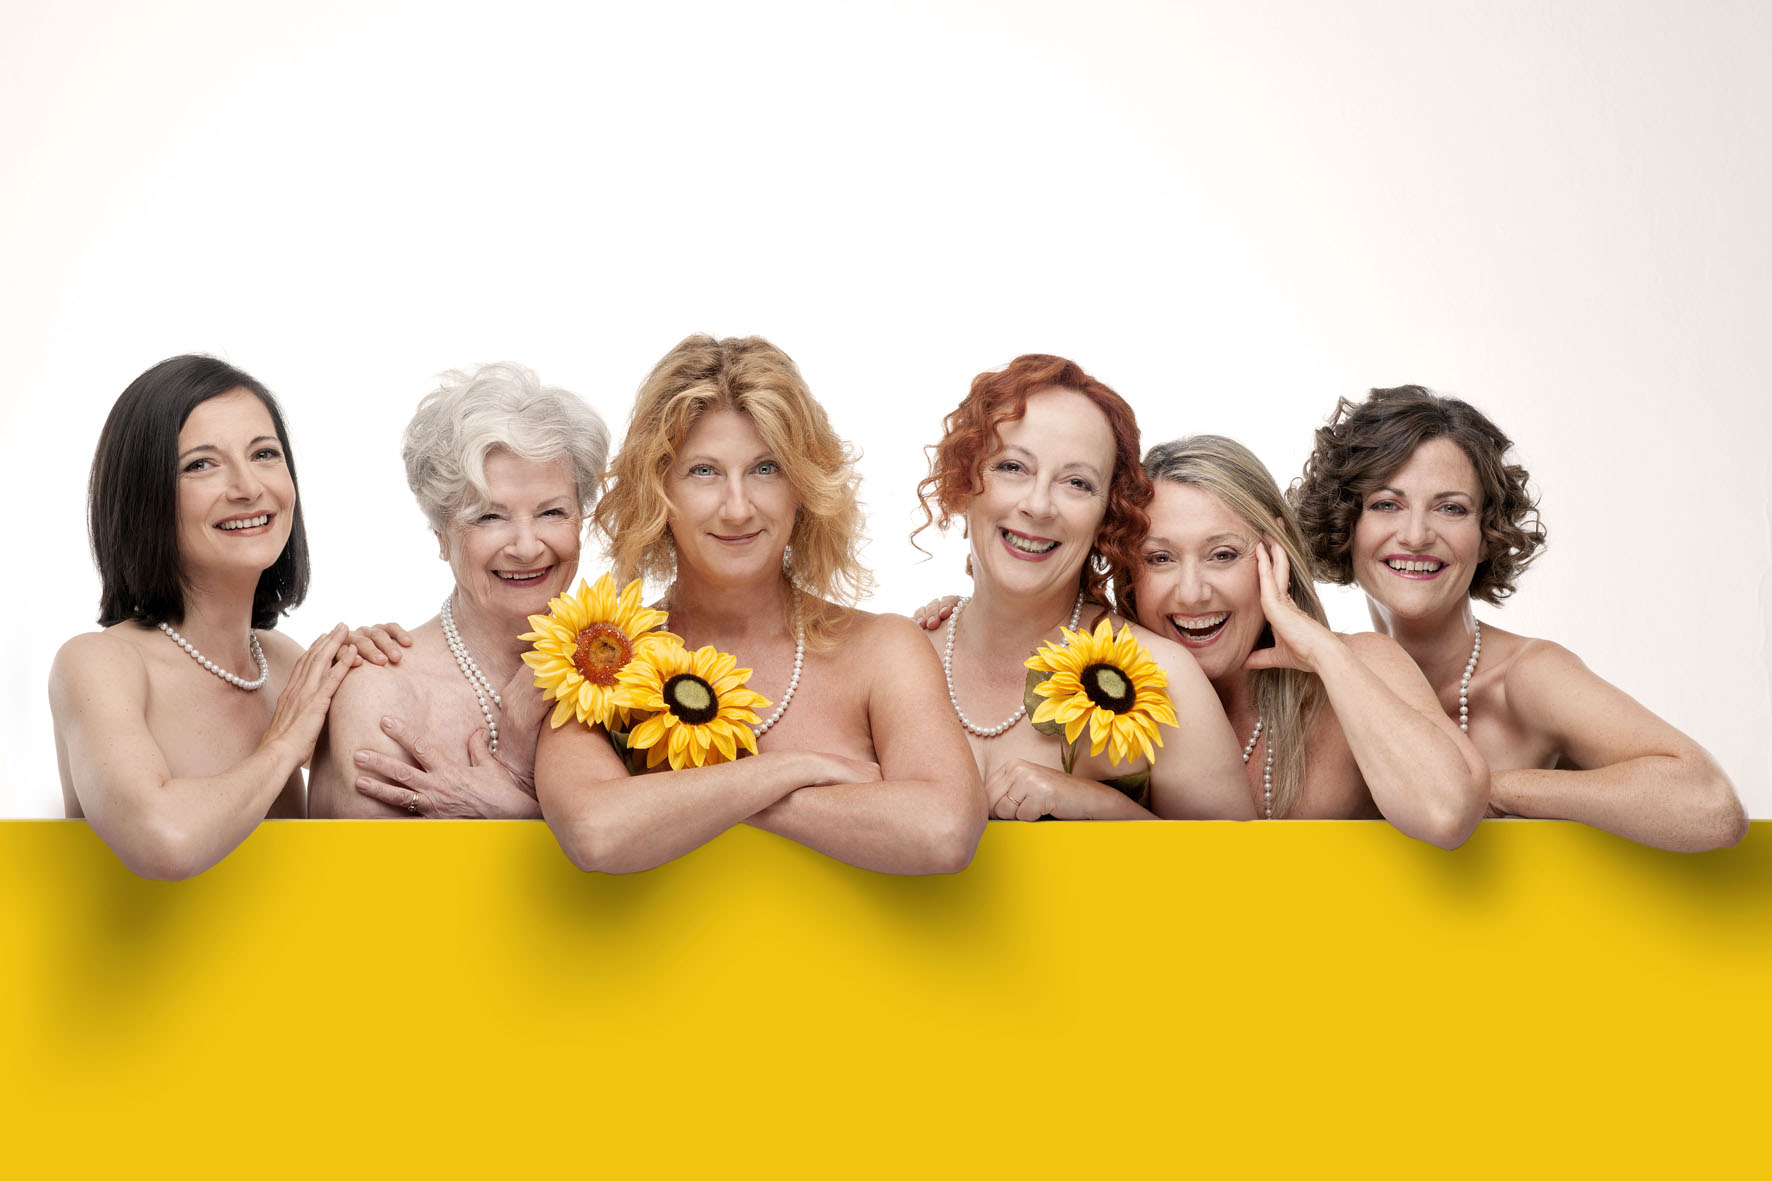 Calendar Girls, al Teatro Manzoni di Milano fino al 29 novembre